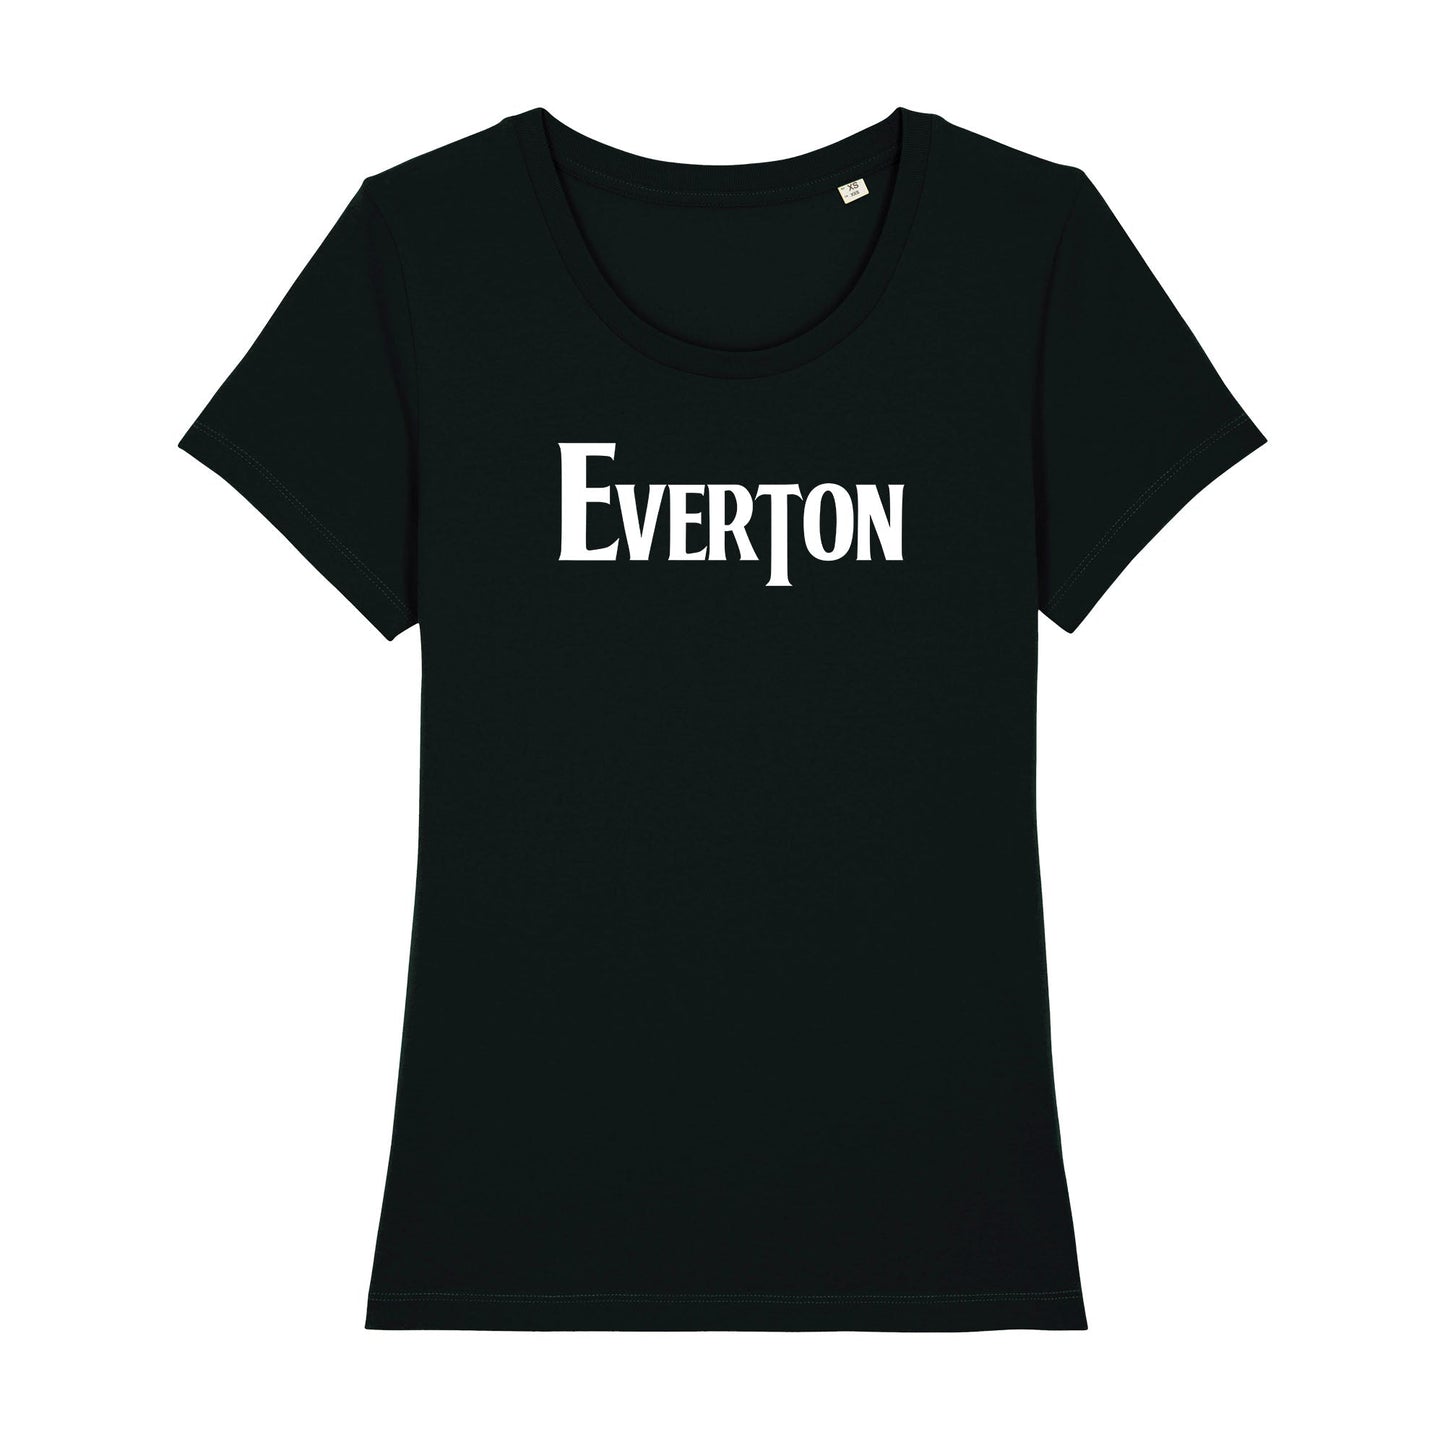 Everton Stadium Banner Women's Tee